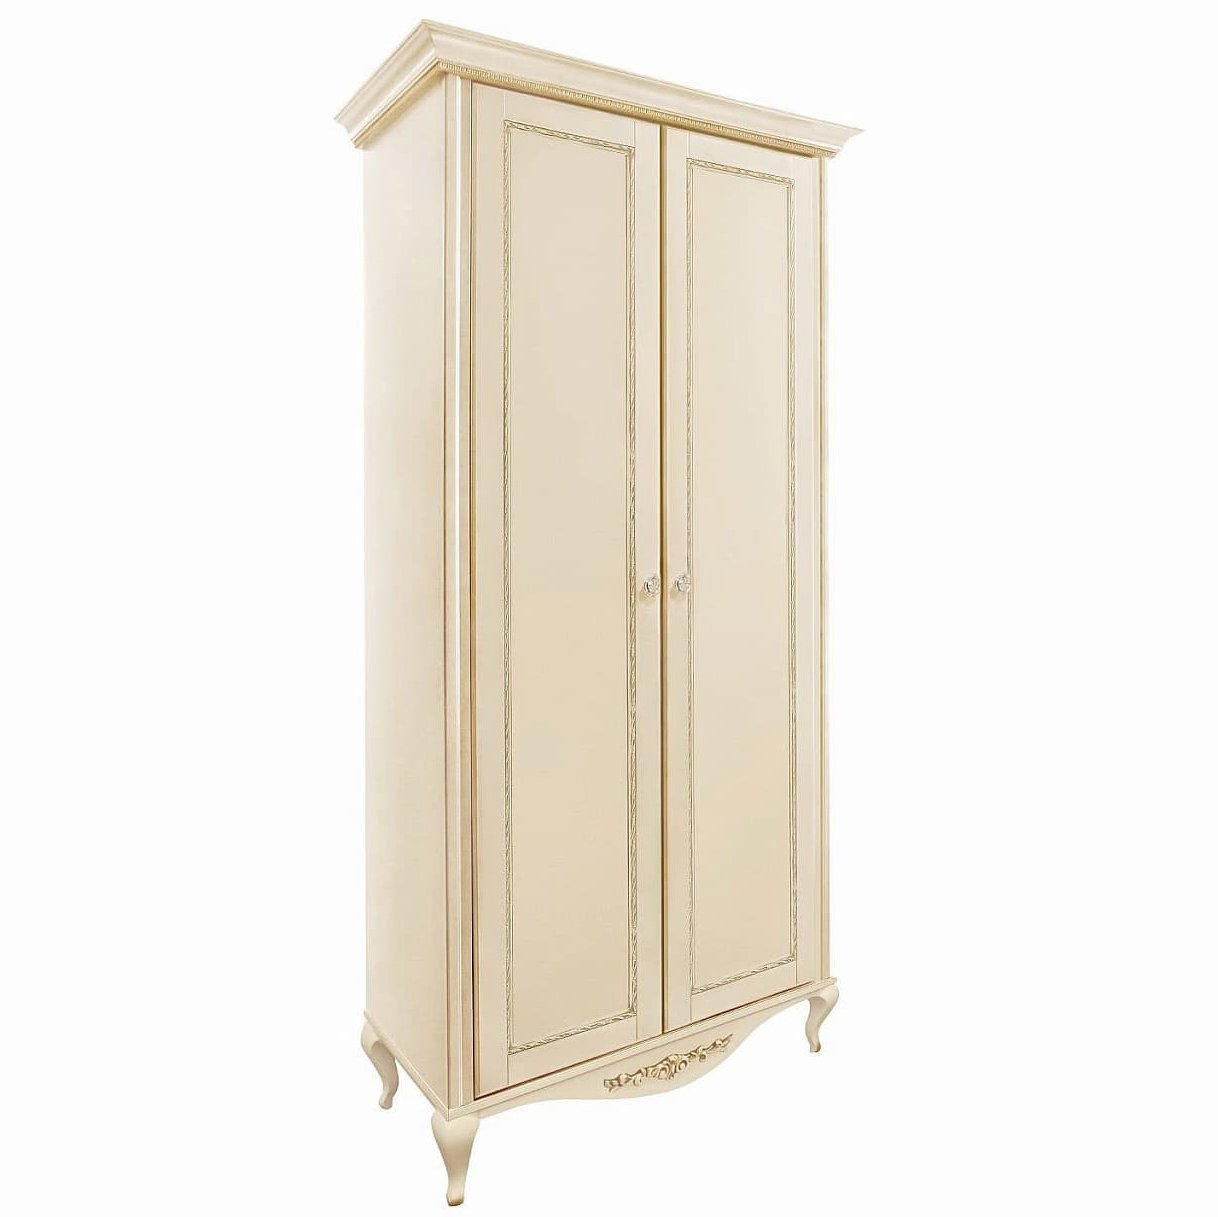 Шкаф платяной Timber Неаполь, 2-х дверный с полками 114x65x227 см, цвет: ваниль с золотом (Т-522П/VO)Т-522П